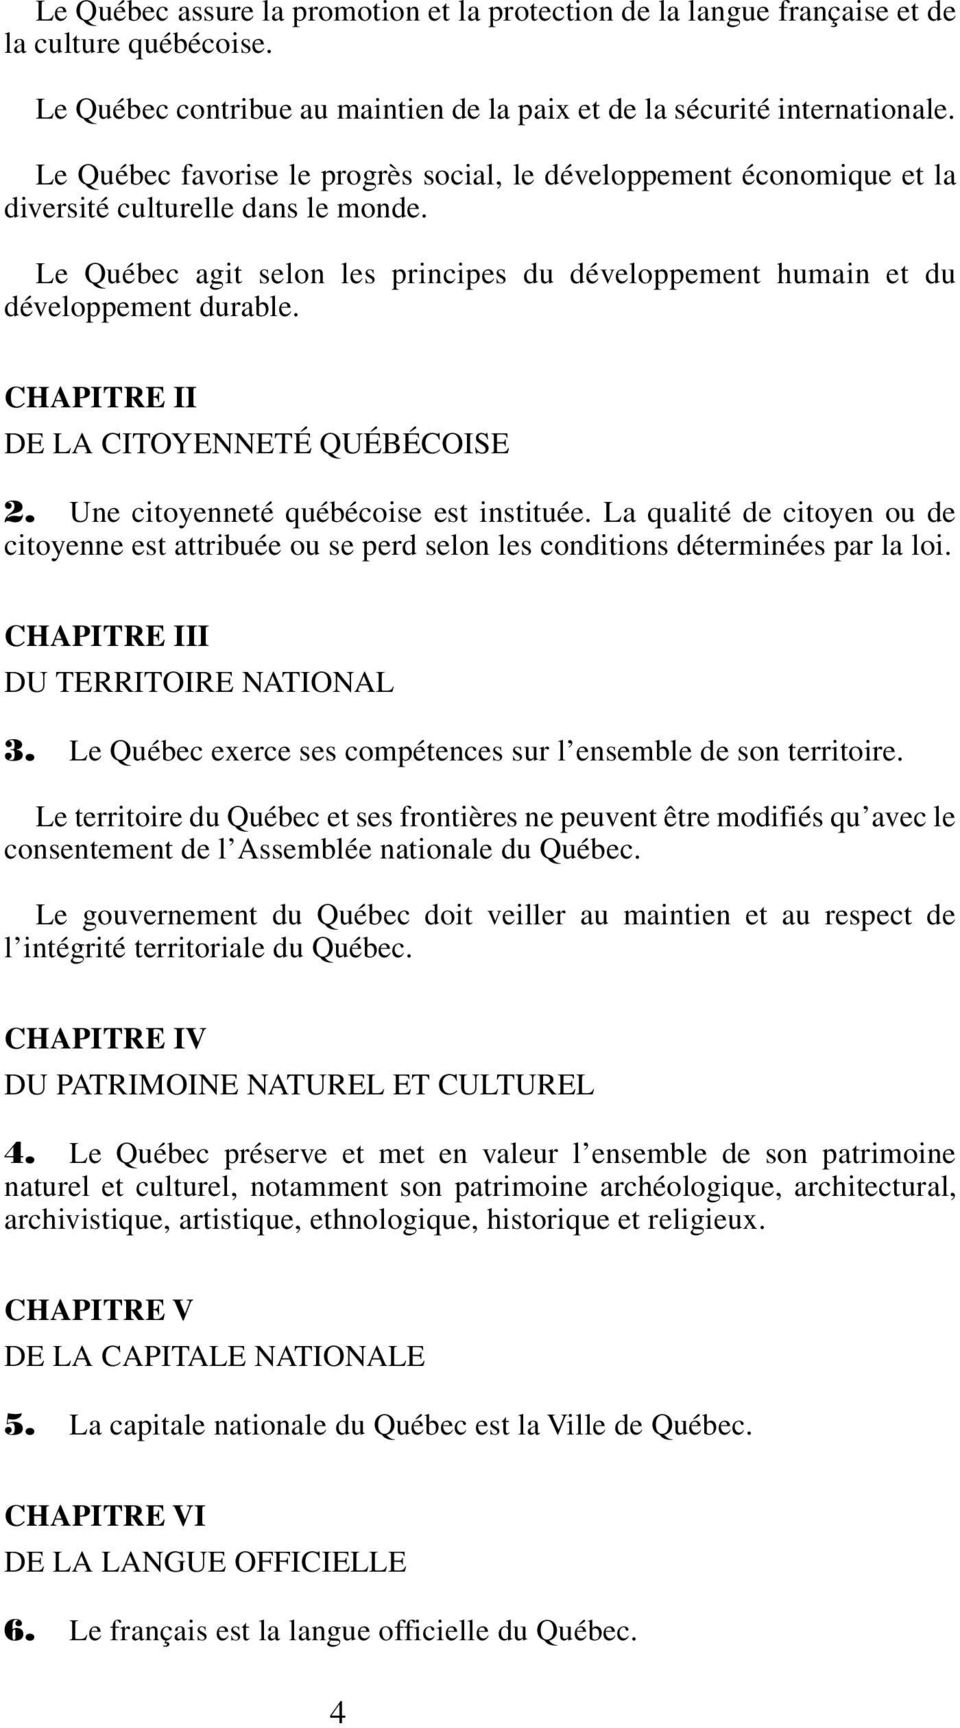 CHAPITRE II DE LA CITOYENNETÉ QUÉBÉCOISE 2. Une citoyenneté québécoise est instituée. La qualité de citoyen ou de citoyenne est attribuée ou se perd selon les conditions déterminées par la loi.